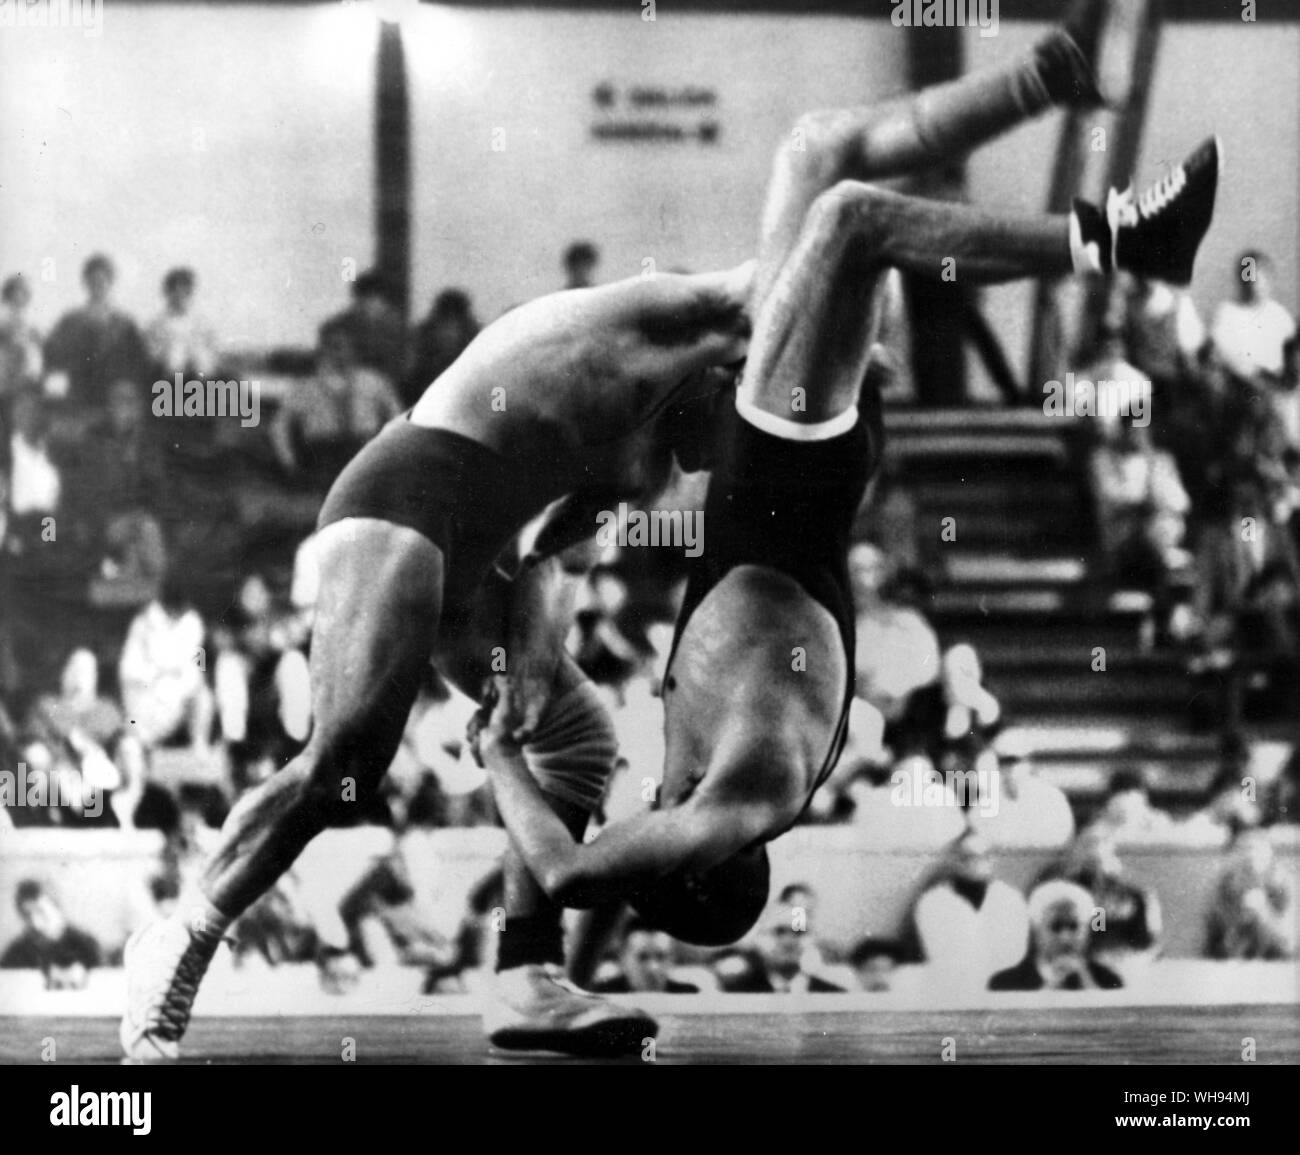 21 ottobre 1967: Città del Messico Giochi Olimpici: Russo lottatore, Fidel Guerra durante il loro 70kg bout al mini-giochi Olimpici incontro qui. Il russo ha vinto la partita. Foto Stock